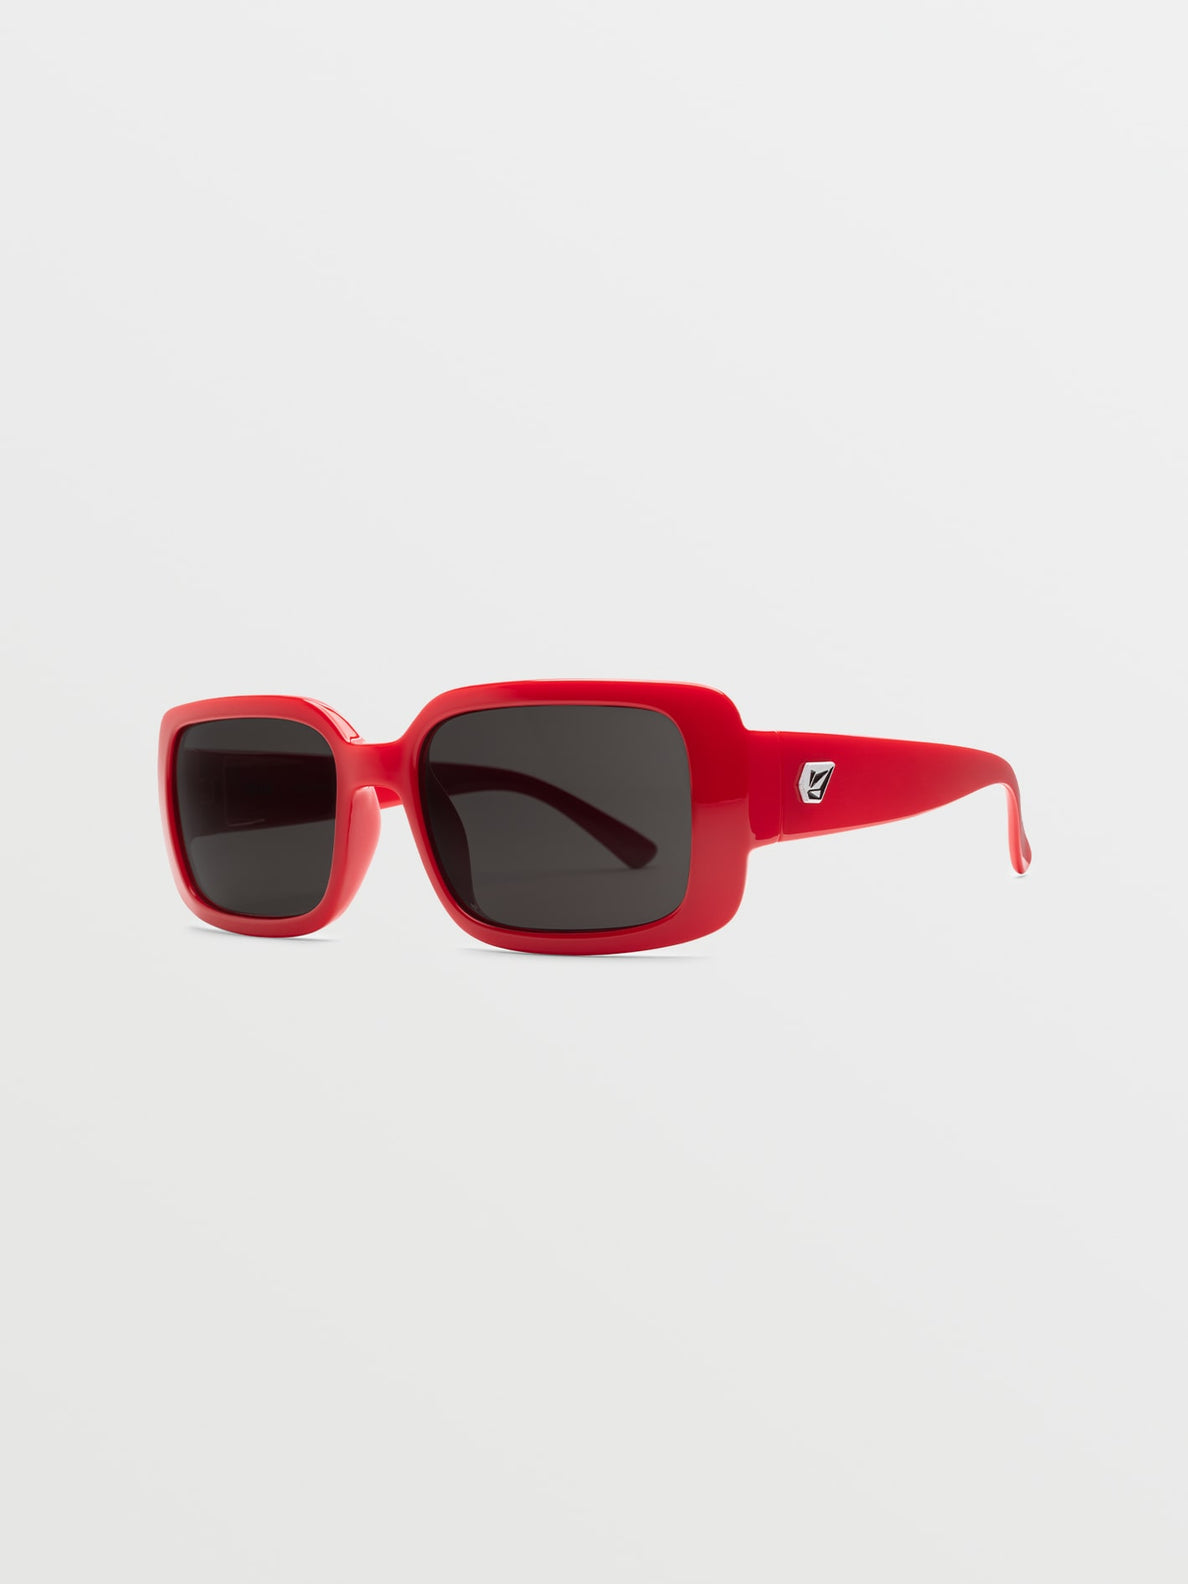 True Sunglasses - Gloss Red/Gray (VE03301301_0000) [B]